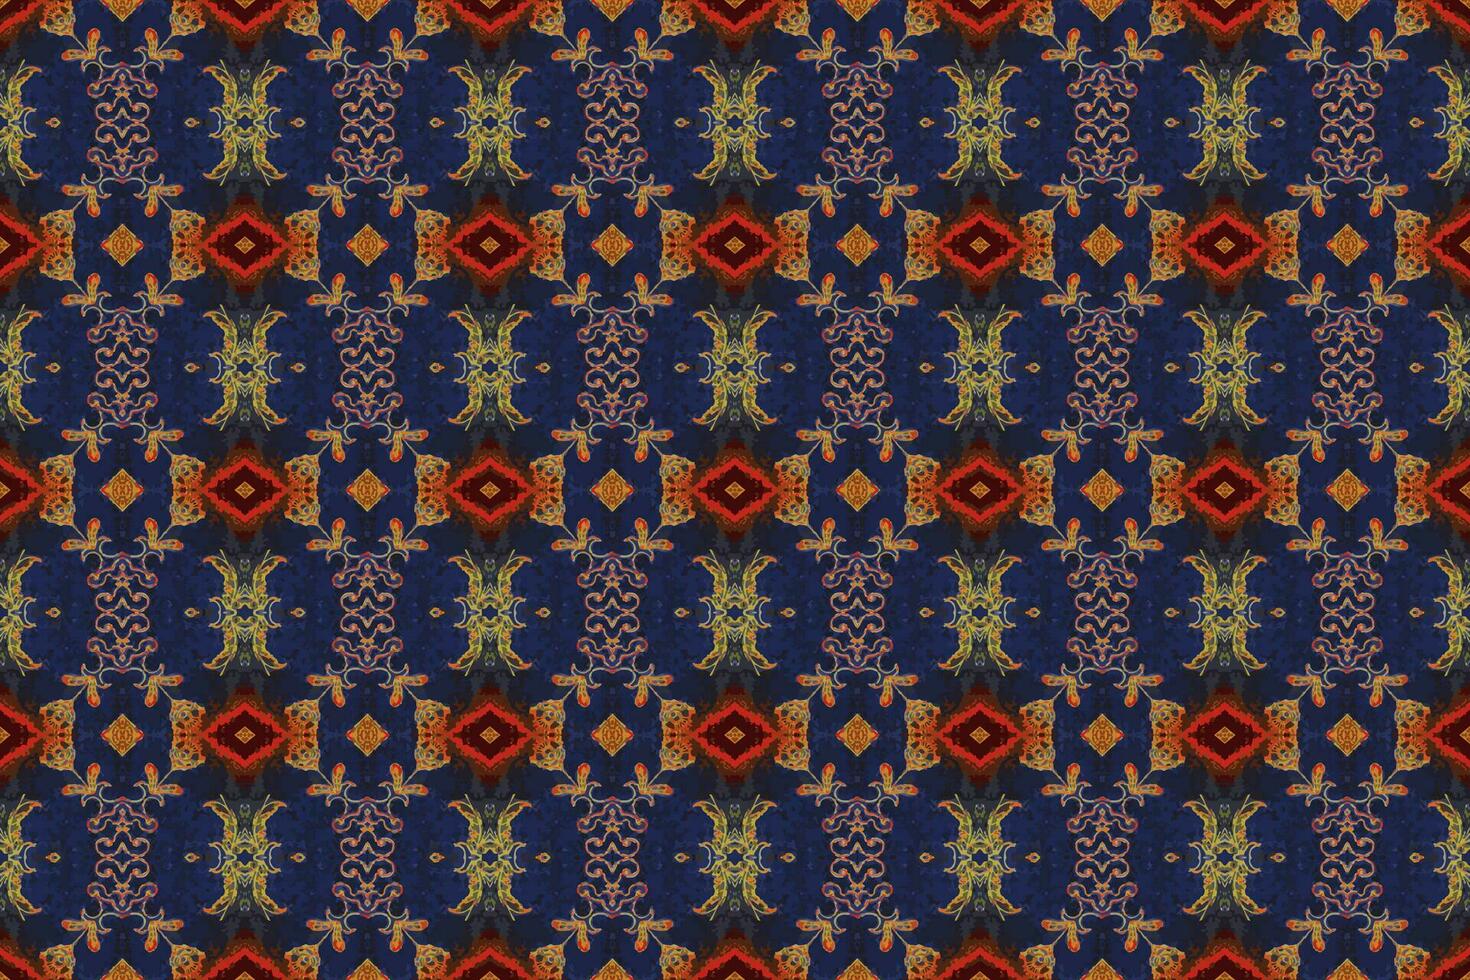 sin costura batik patrón, geométrico tribal patrón se parece étnico bohemio, azteca estilo, ikat estilo.lujo decorativo tela modelo para famoso banners.diseñados para utilizar tela, cortina, alfombra, batik vector